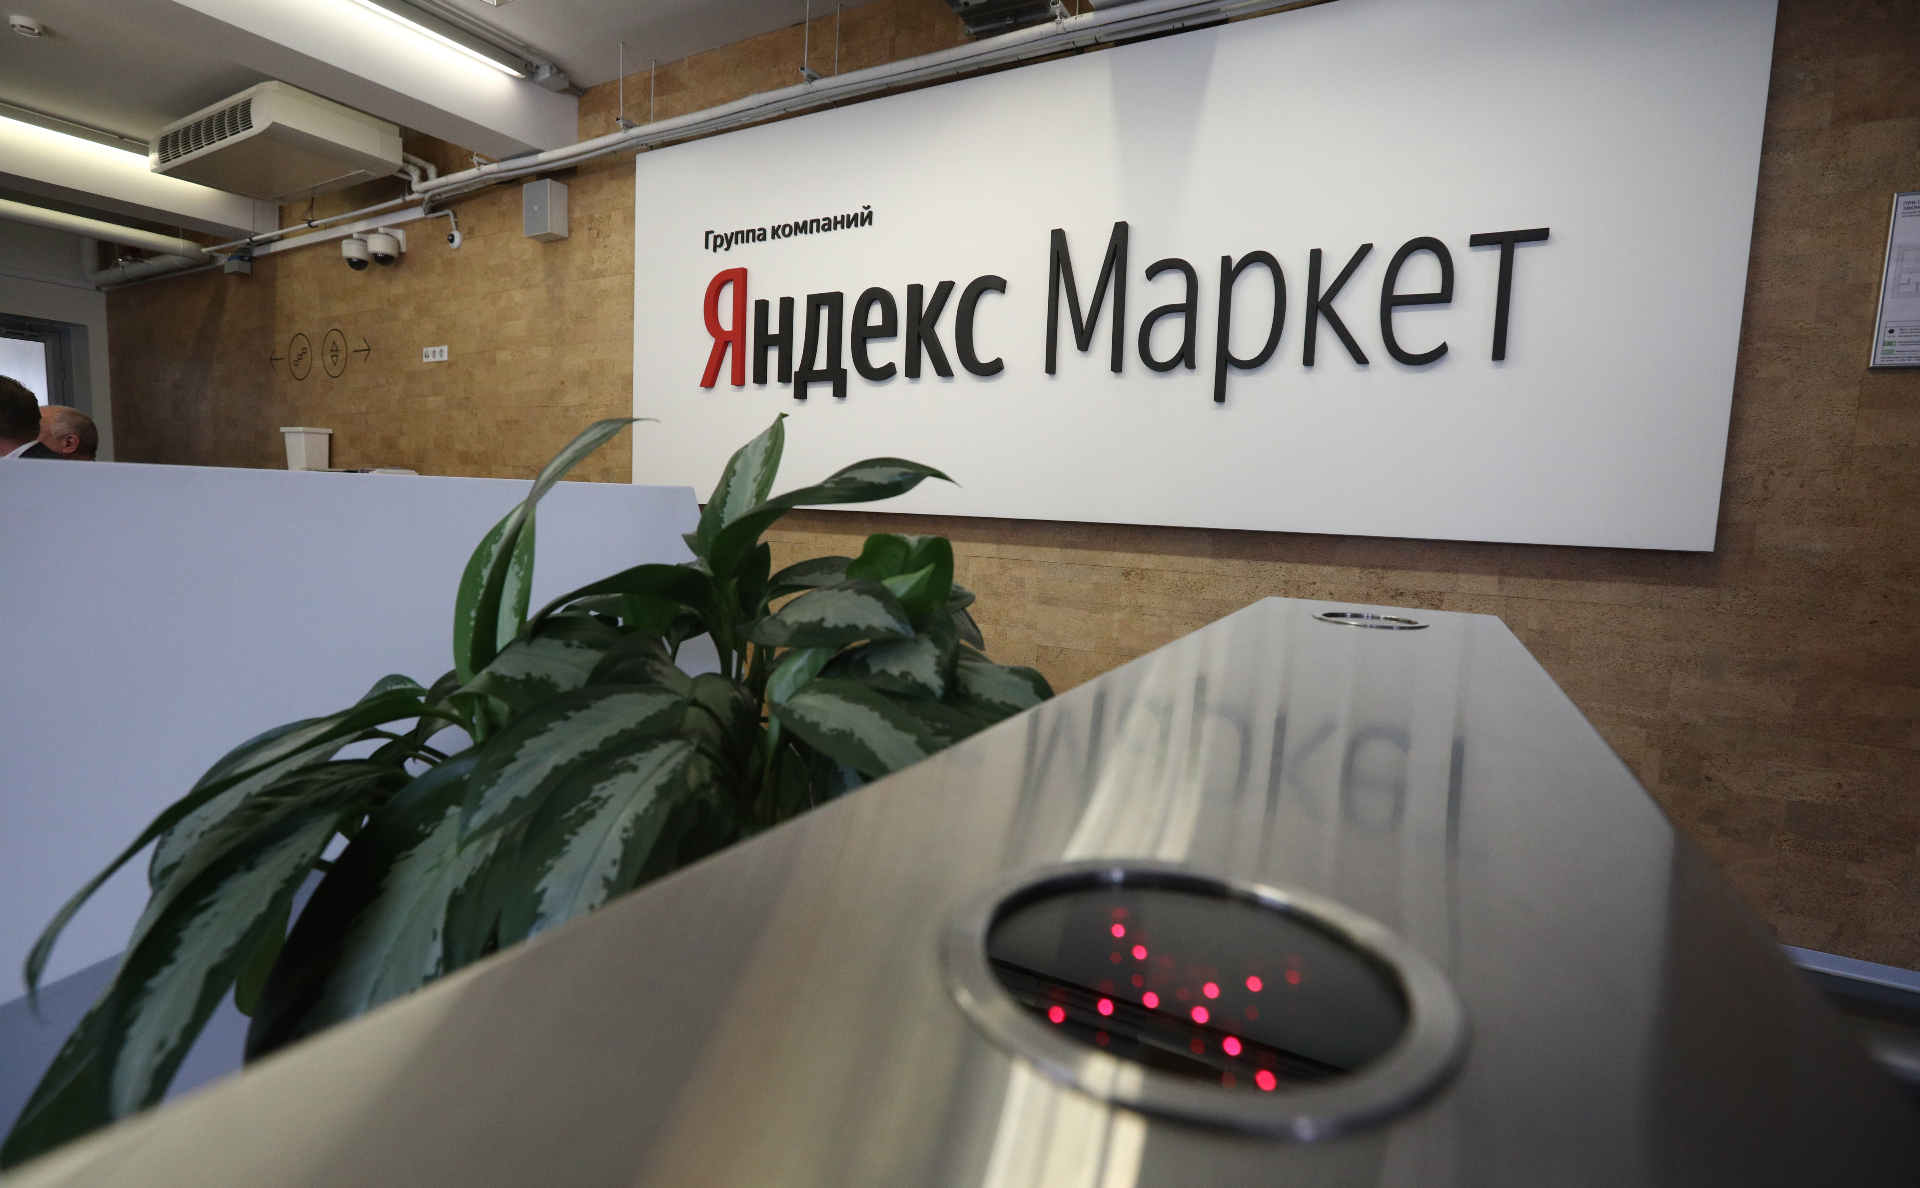 Яндекс Маркет Интернет Магазин Краснодар Телефон